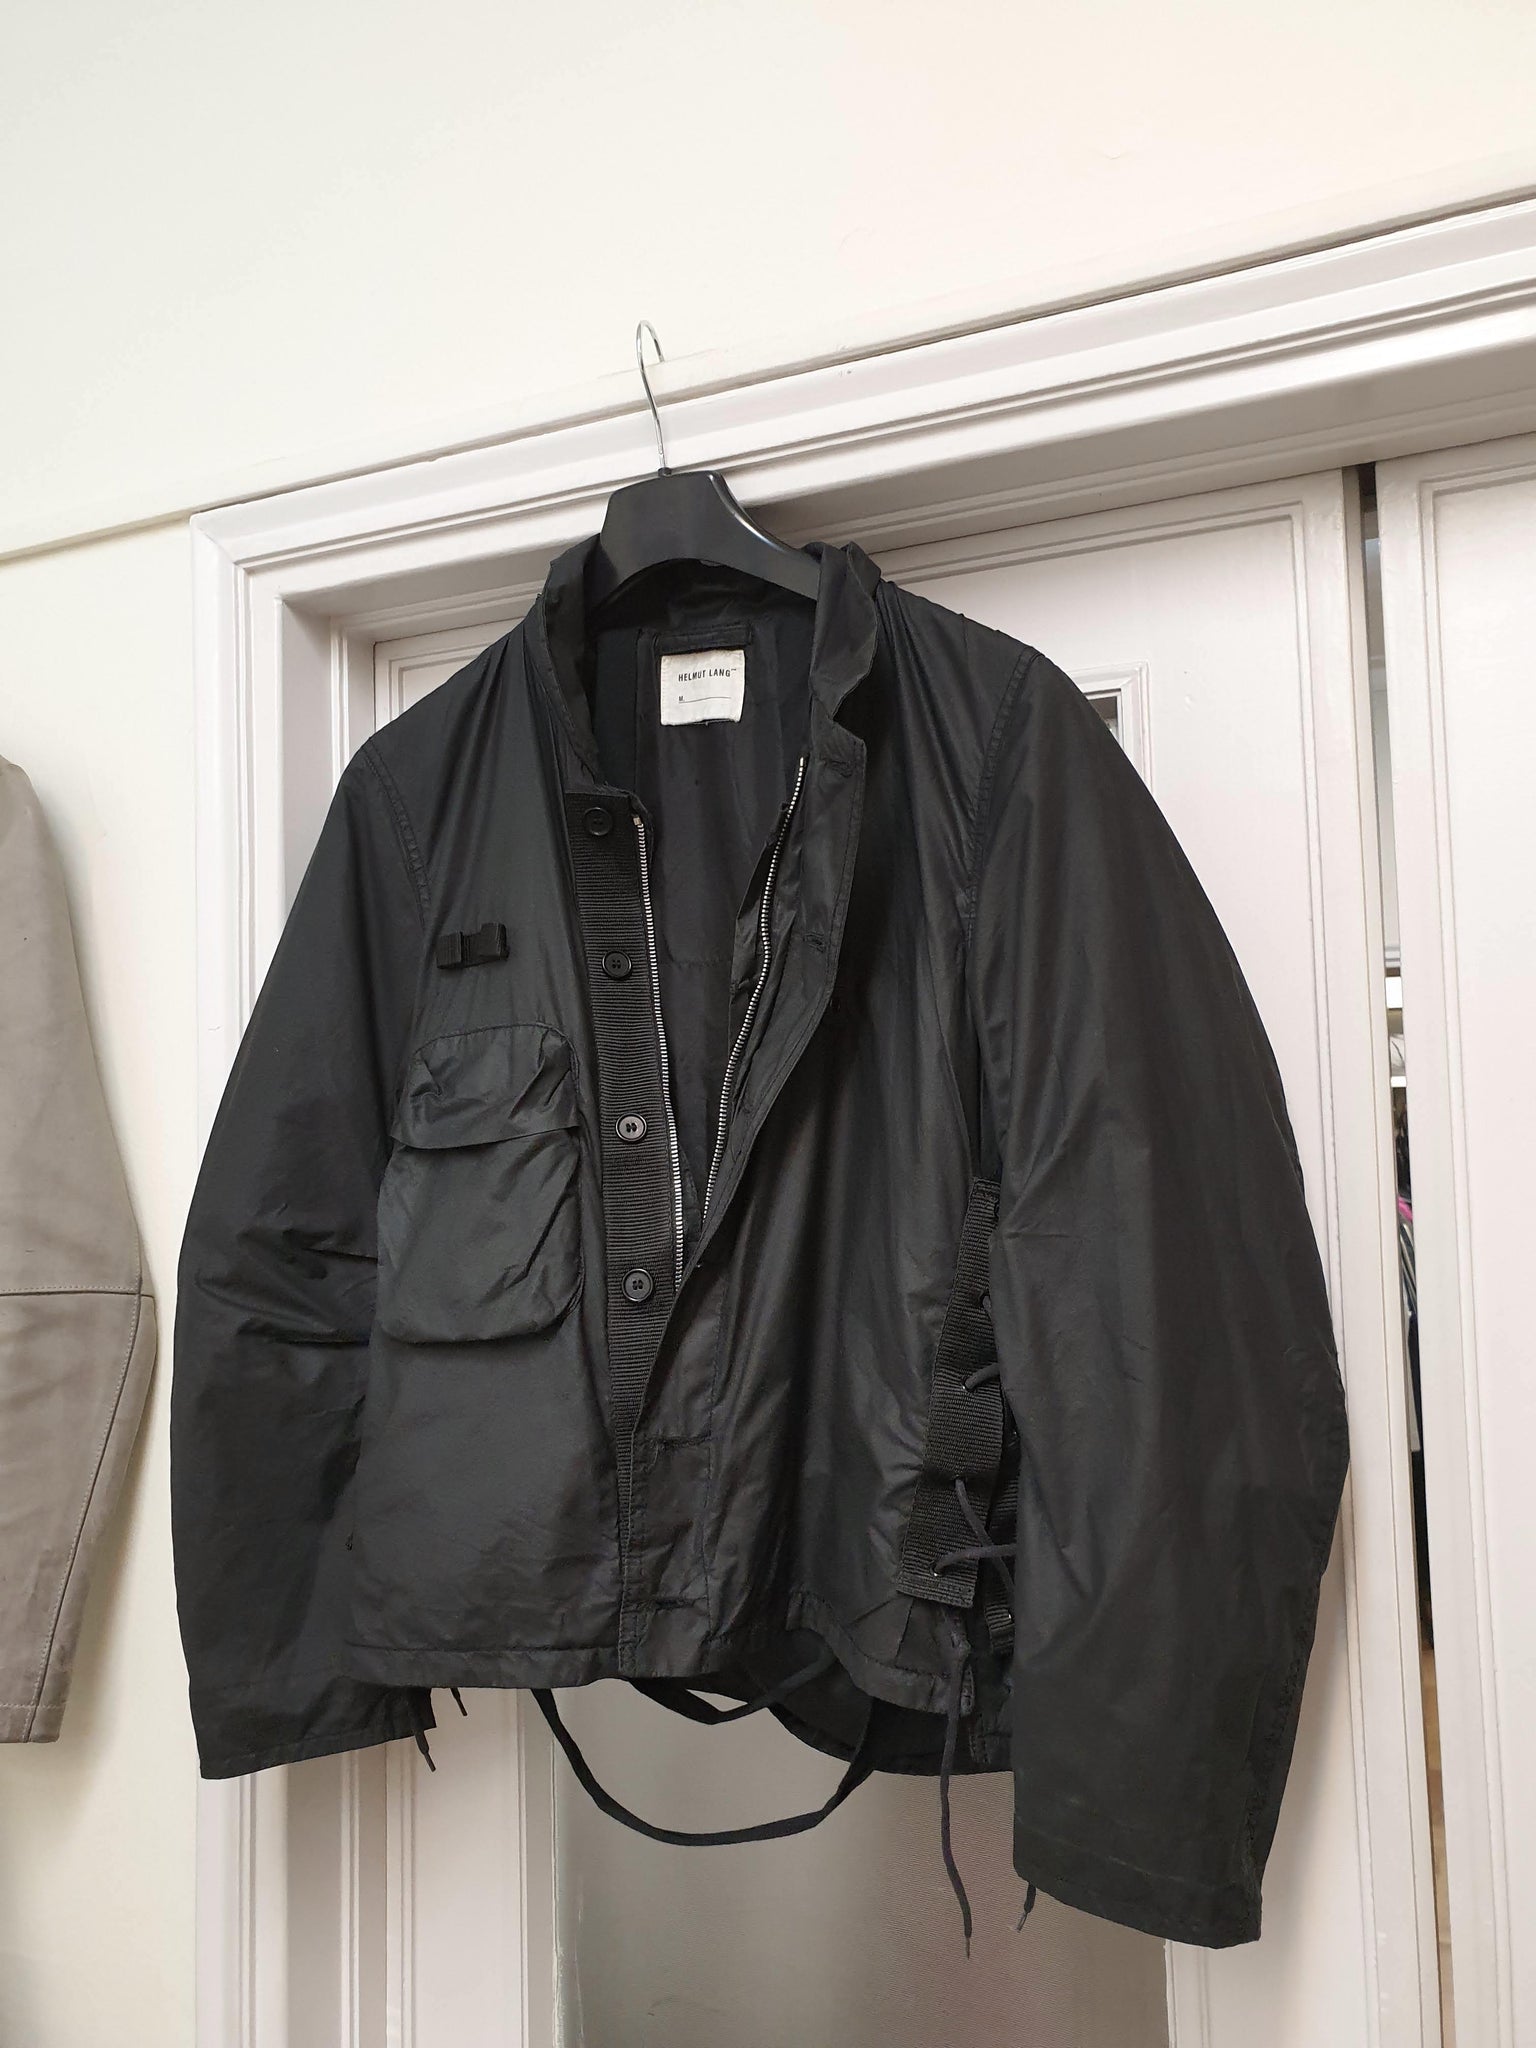 Helmut Lang 2000 flak jacket